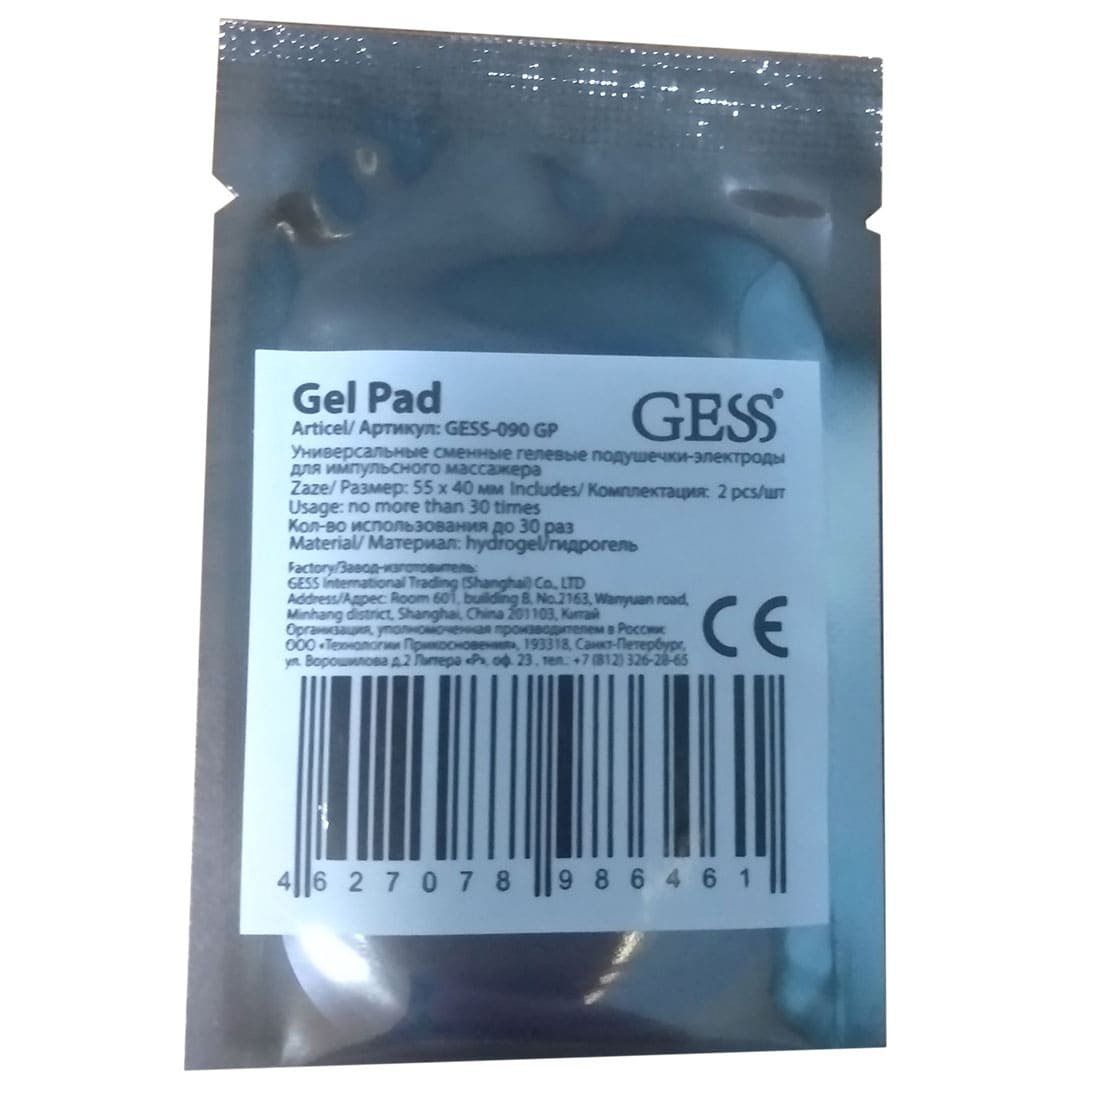 Купить GESS-090 GP, Гелевые подушечки Gel Pad для миостимуляторов, GESS